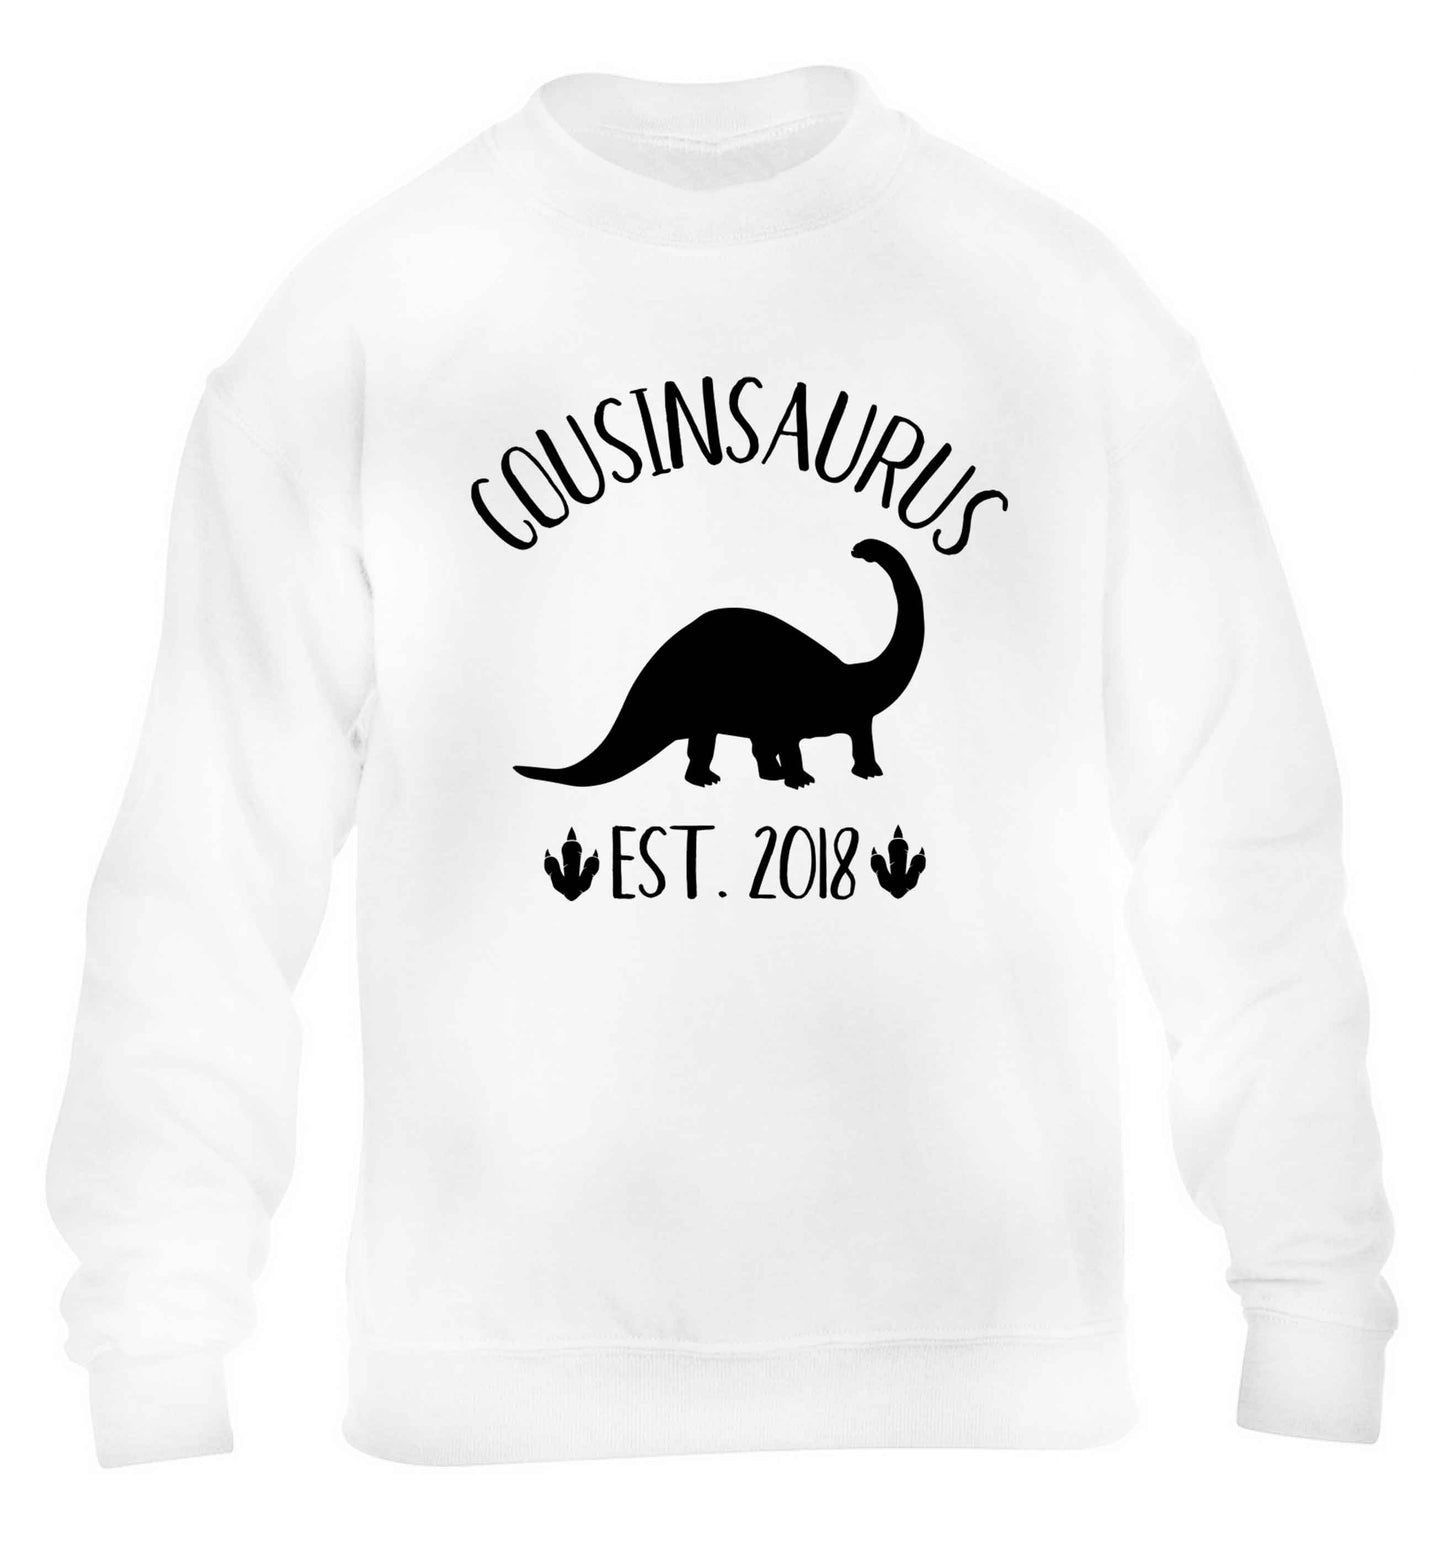 Personalised cousinsaurus since (custom date) children's white sweater 12-13 Years